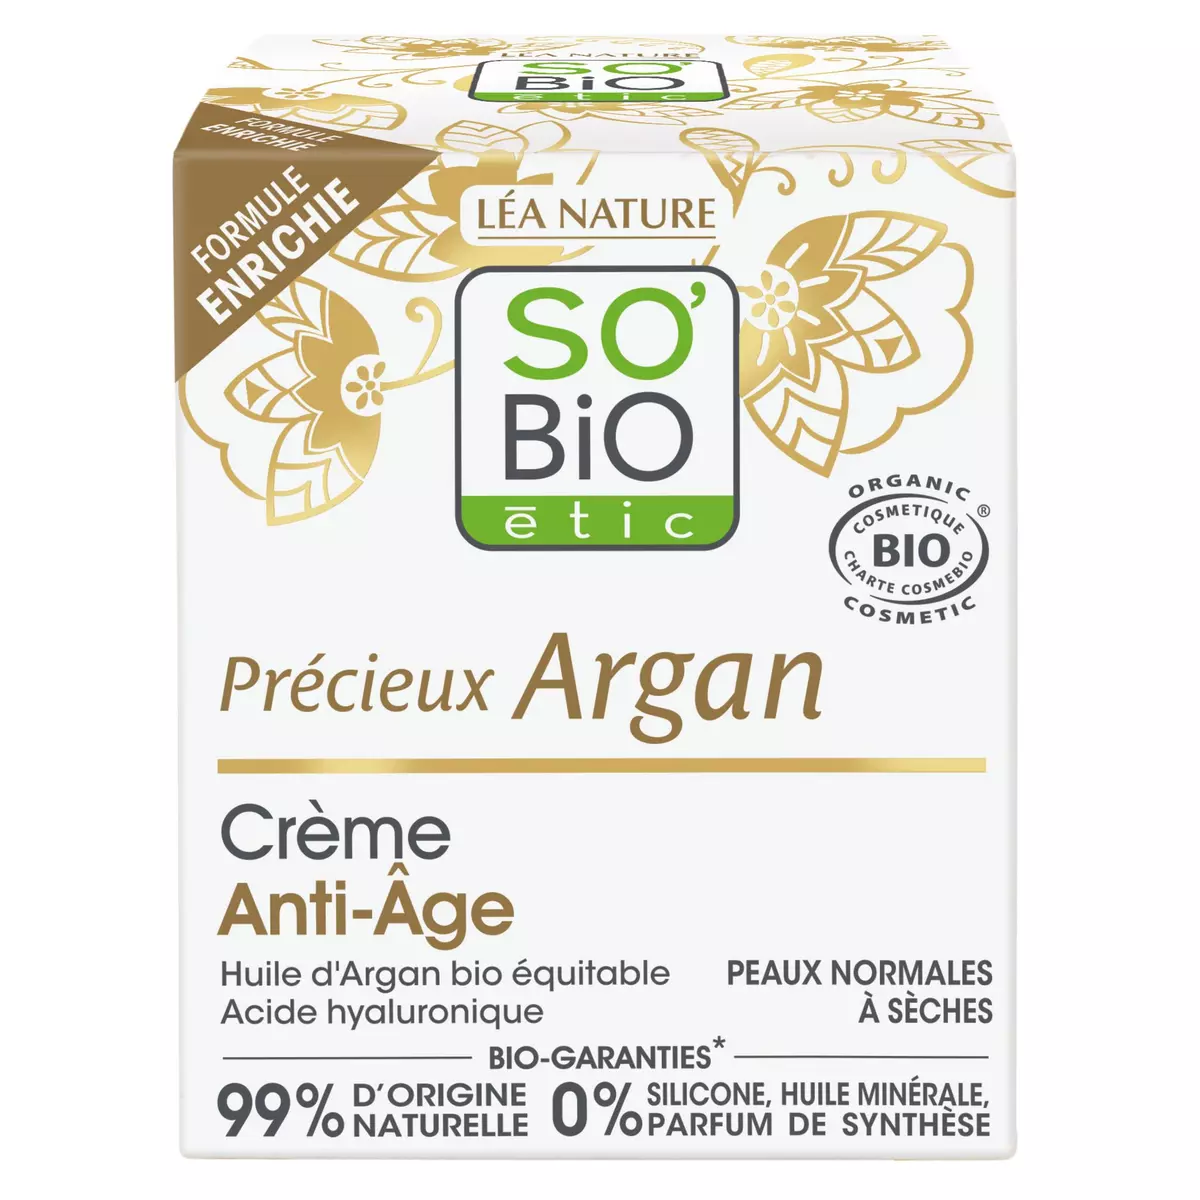 SO BIO ETIC Crème anti-âge de jour à l'huile d'argan bio acide hyaluronique peaux normales à sèches 50ml